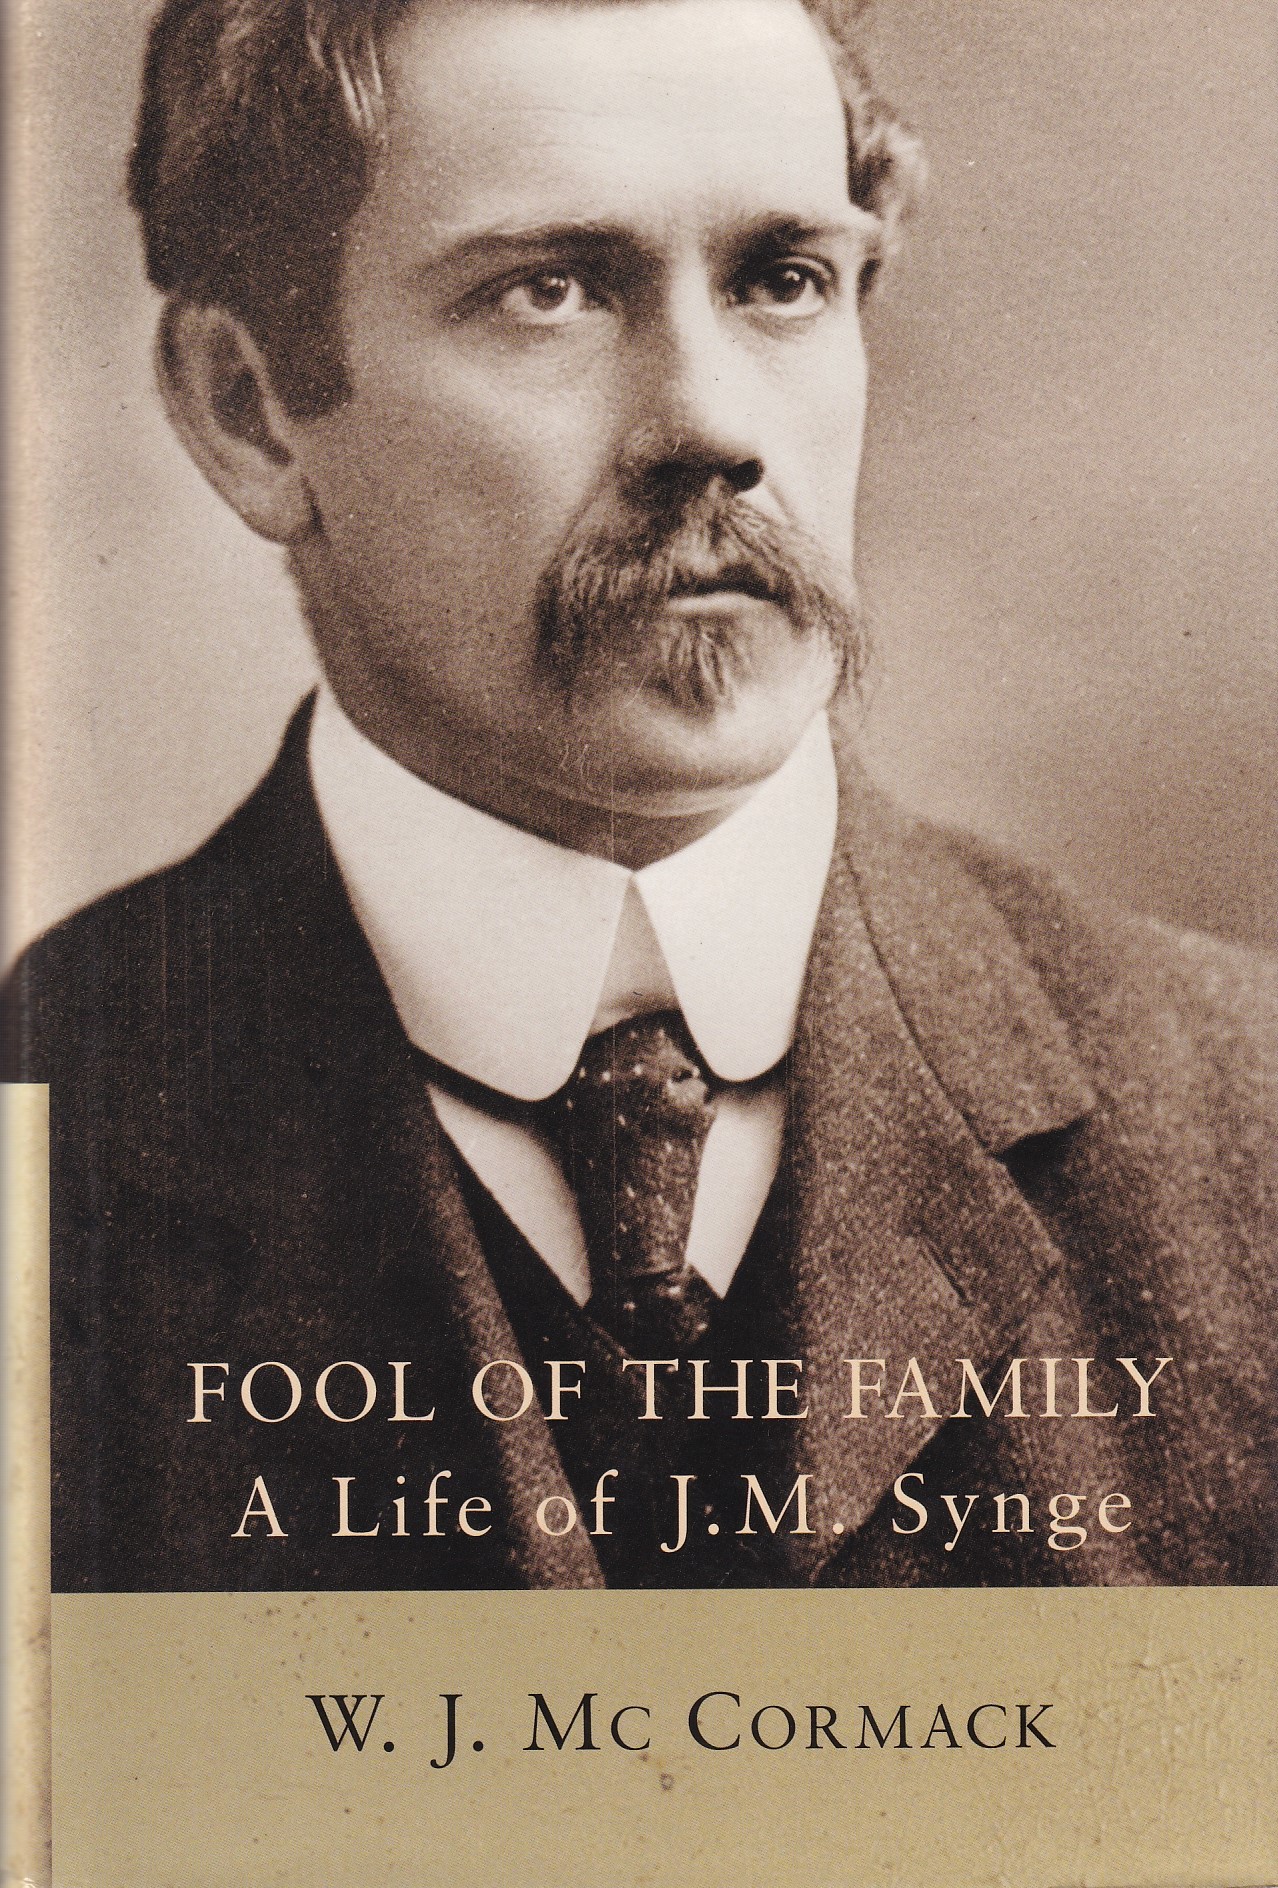 Fool of the Family: A Life of J. M. Synge by W. J. Mc Cormack